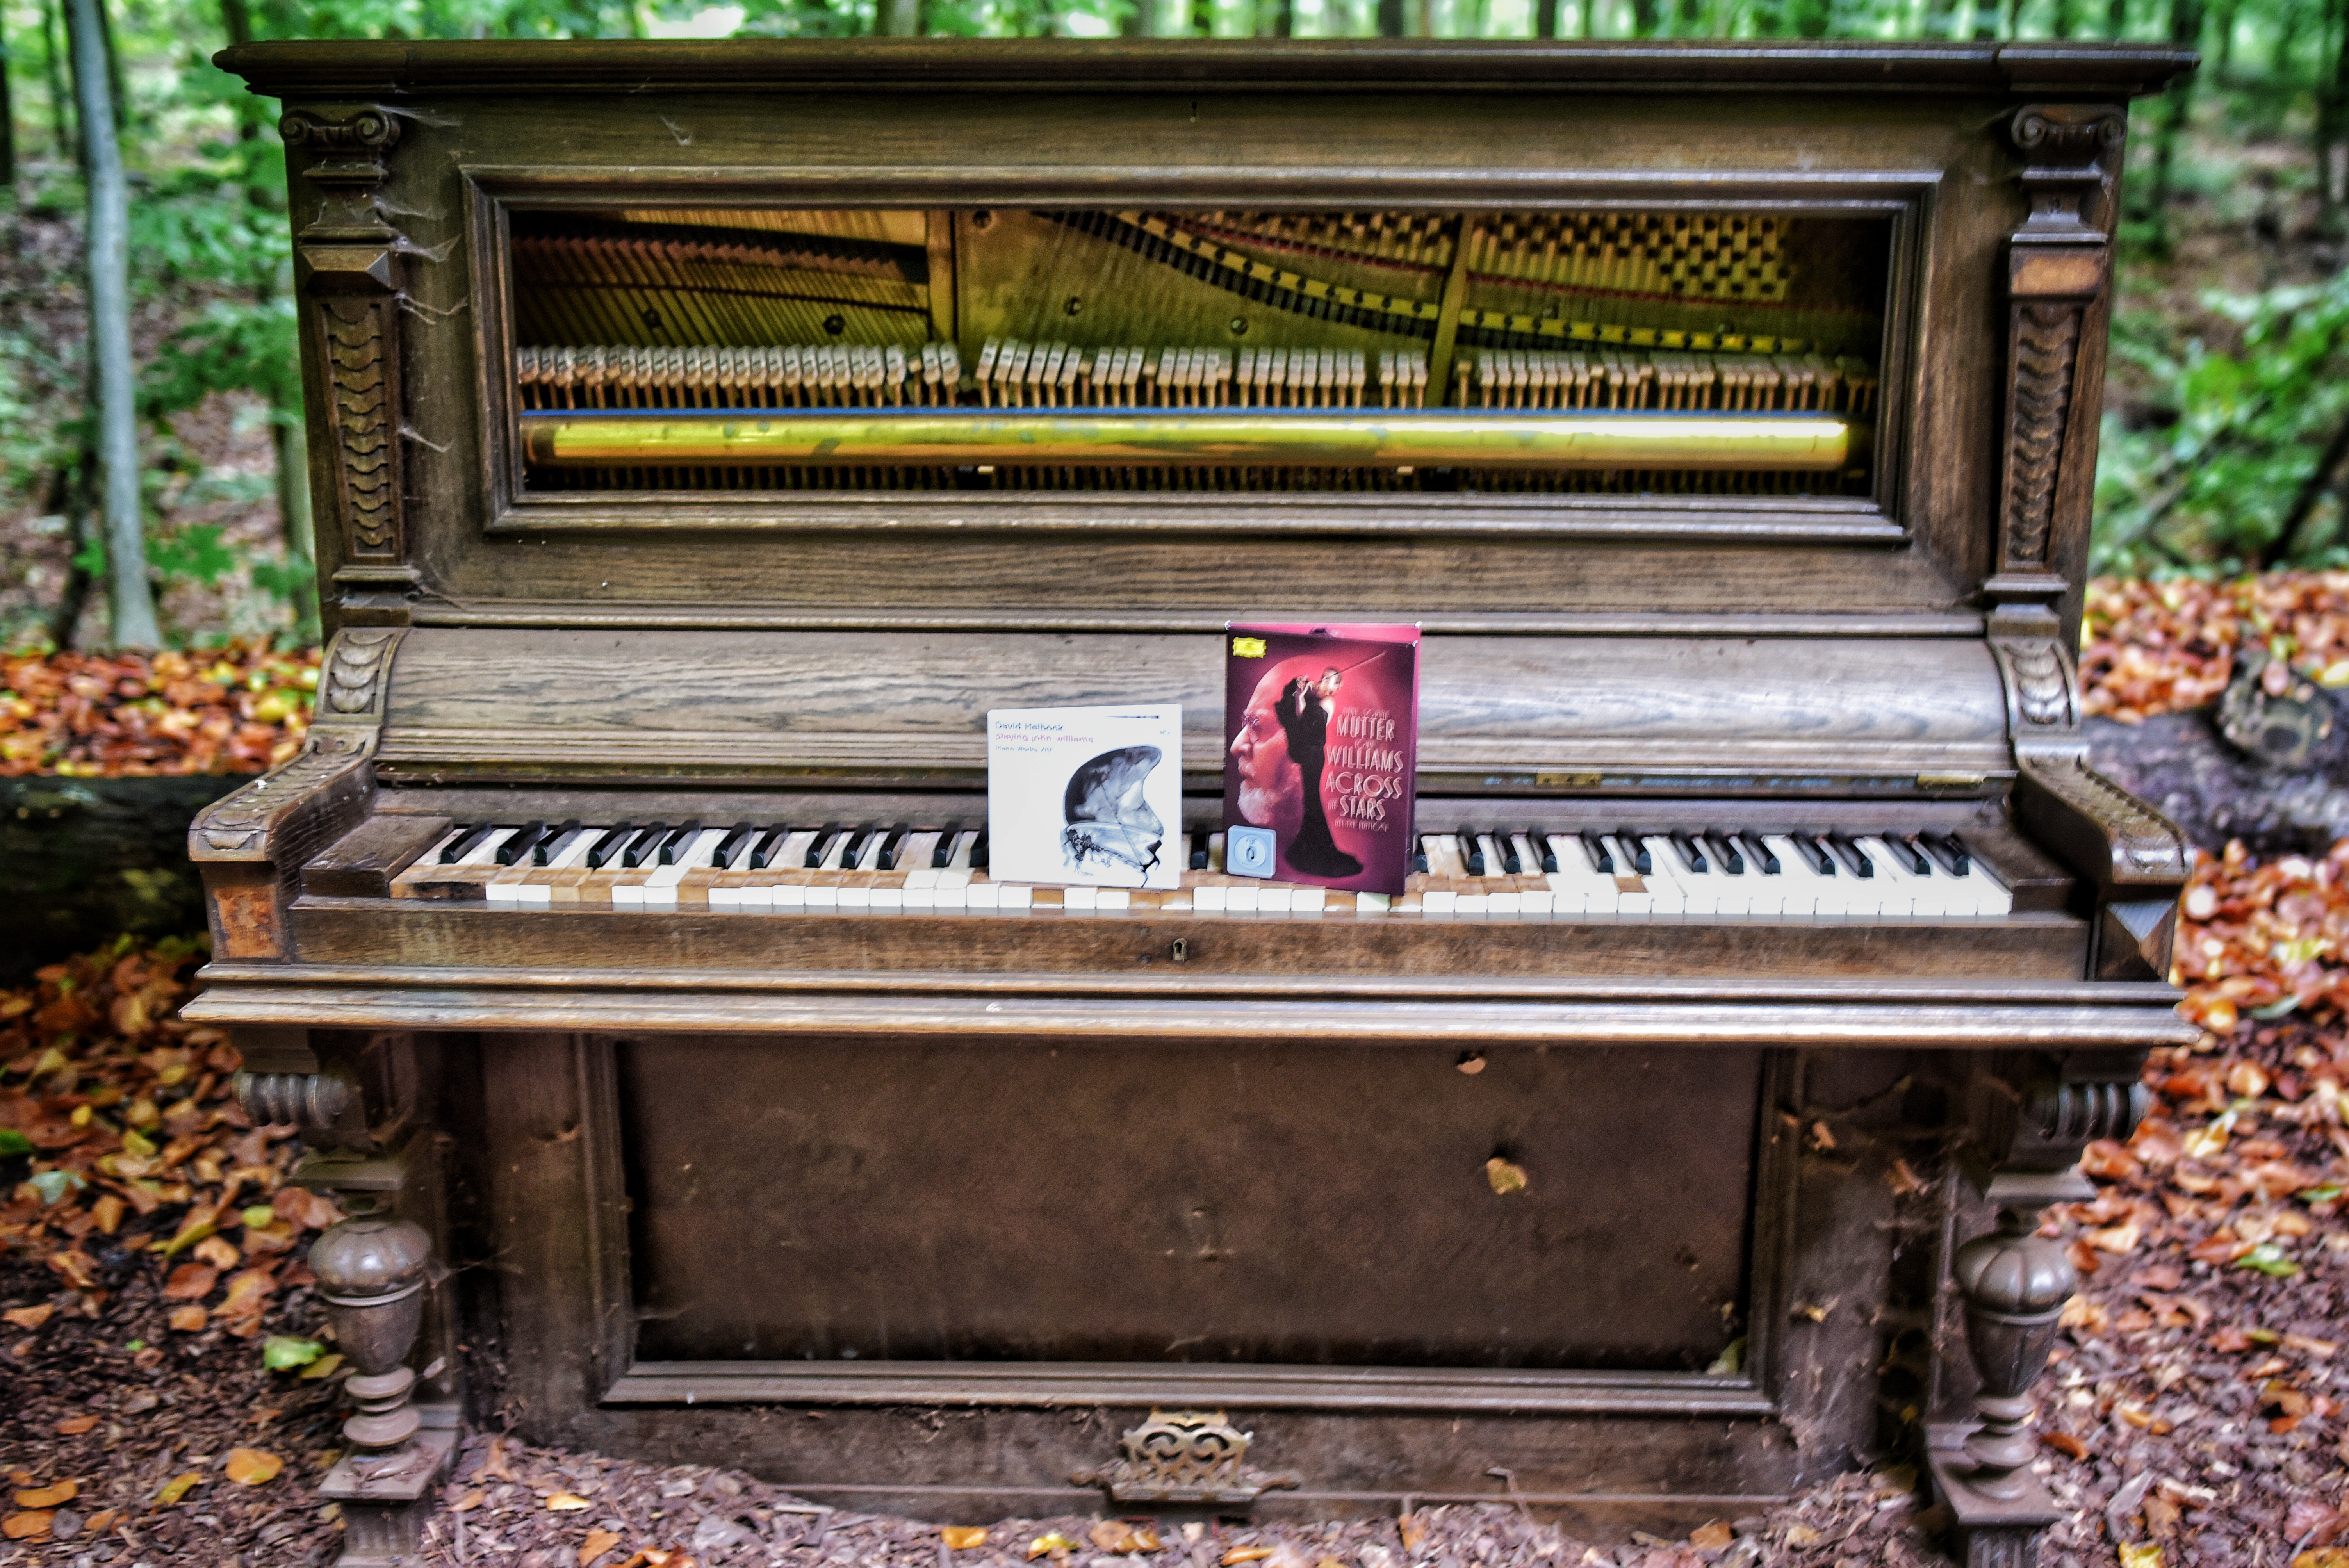 Klavier mit CDs von David Helbock und Anne-Sophie Mutter